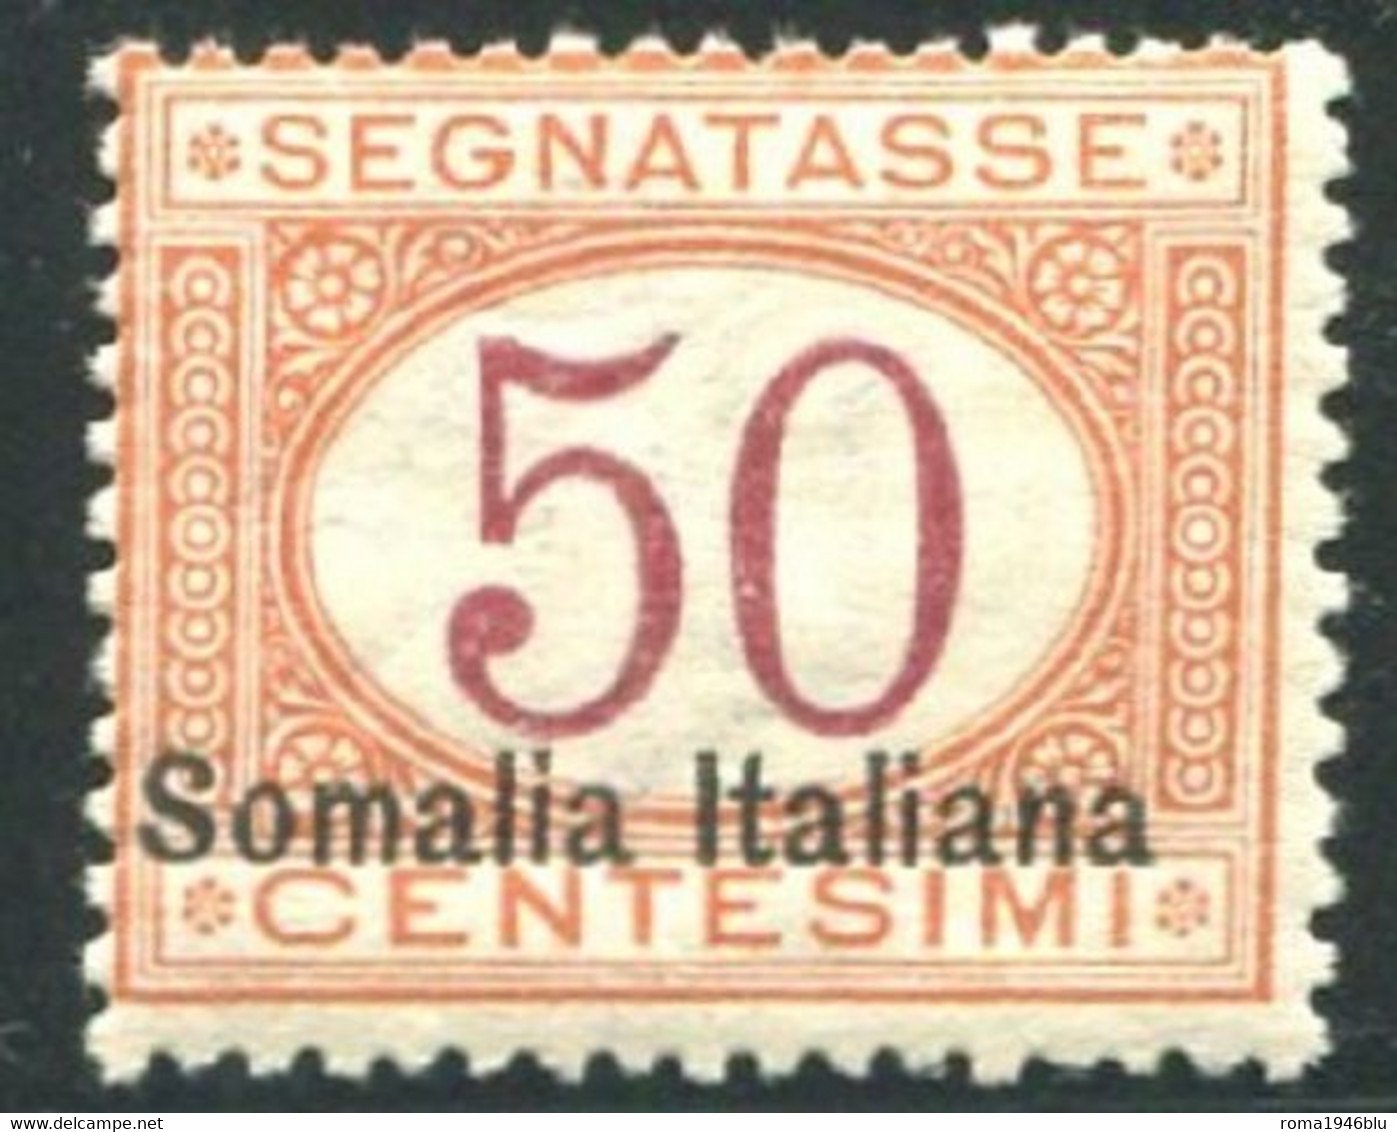 SOMALIA 1920 SEGNATASSE 50 CENT. SASSONE N .28  ** MNH FRESCHISSIMO - Somalia